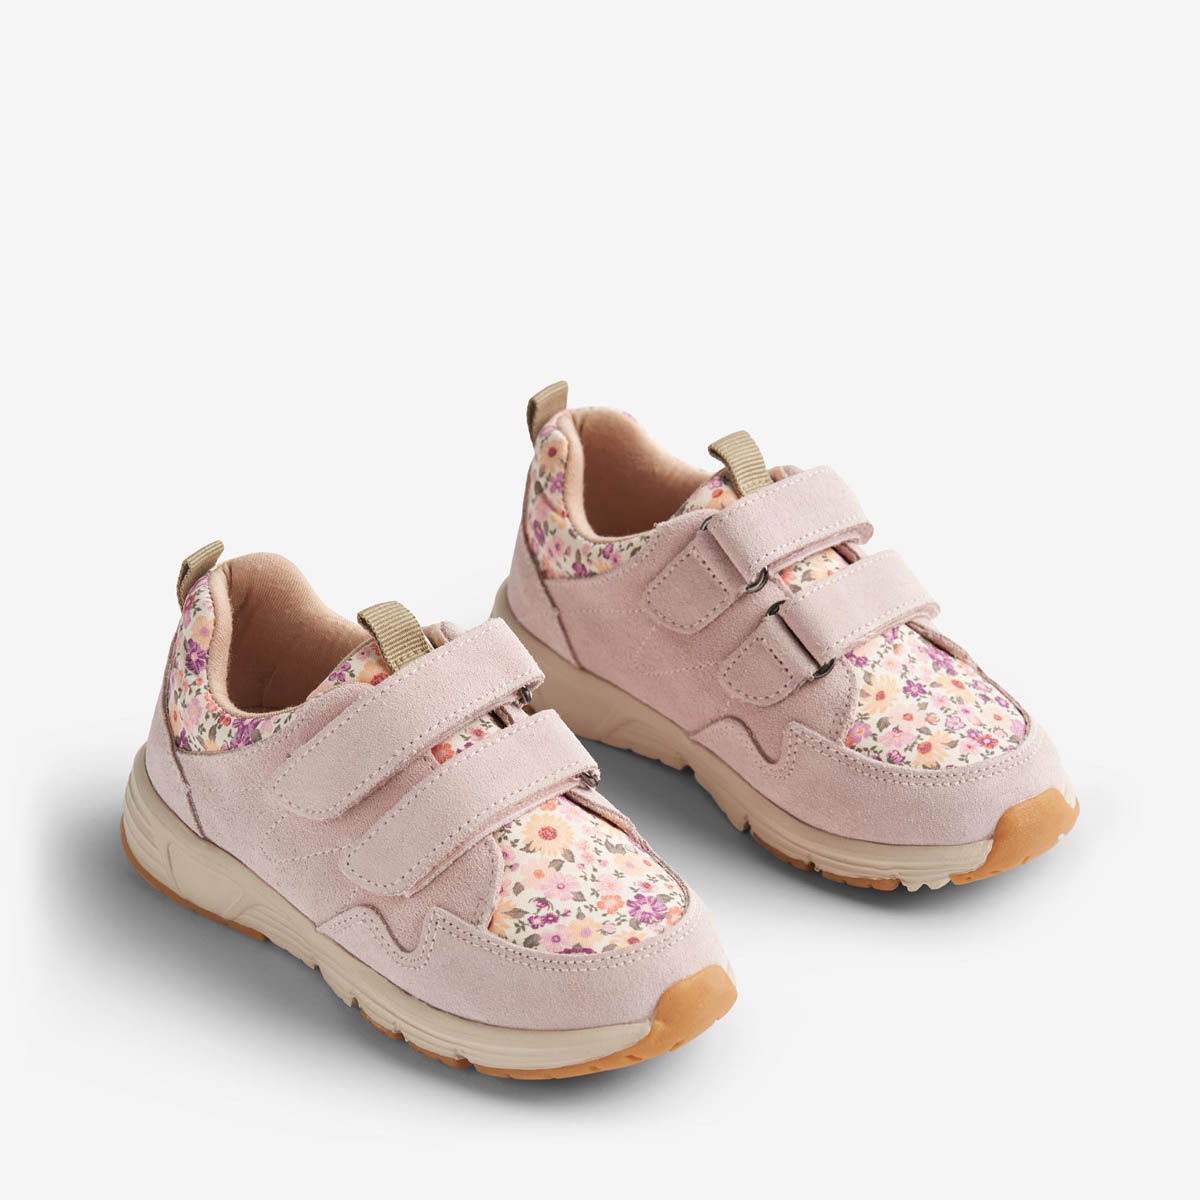 Packshot produktbillede af Wheat lyserøde blomstret sneakers